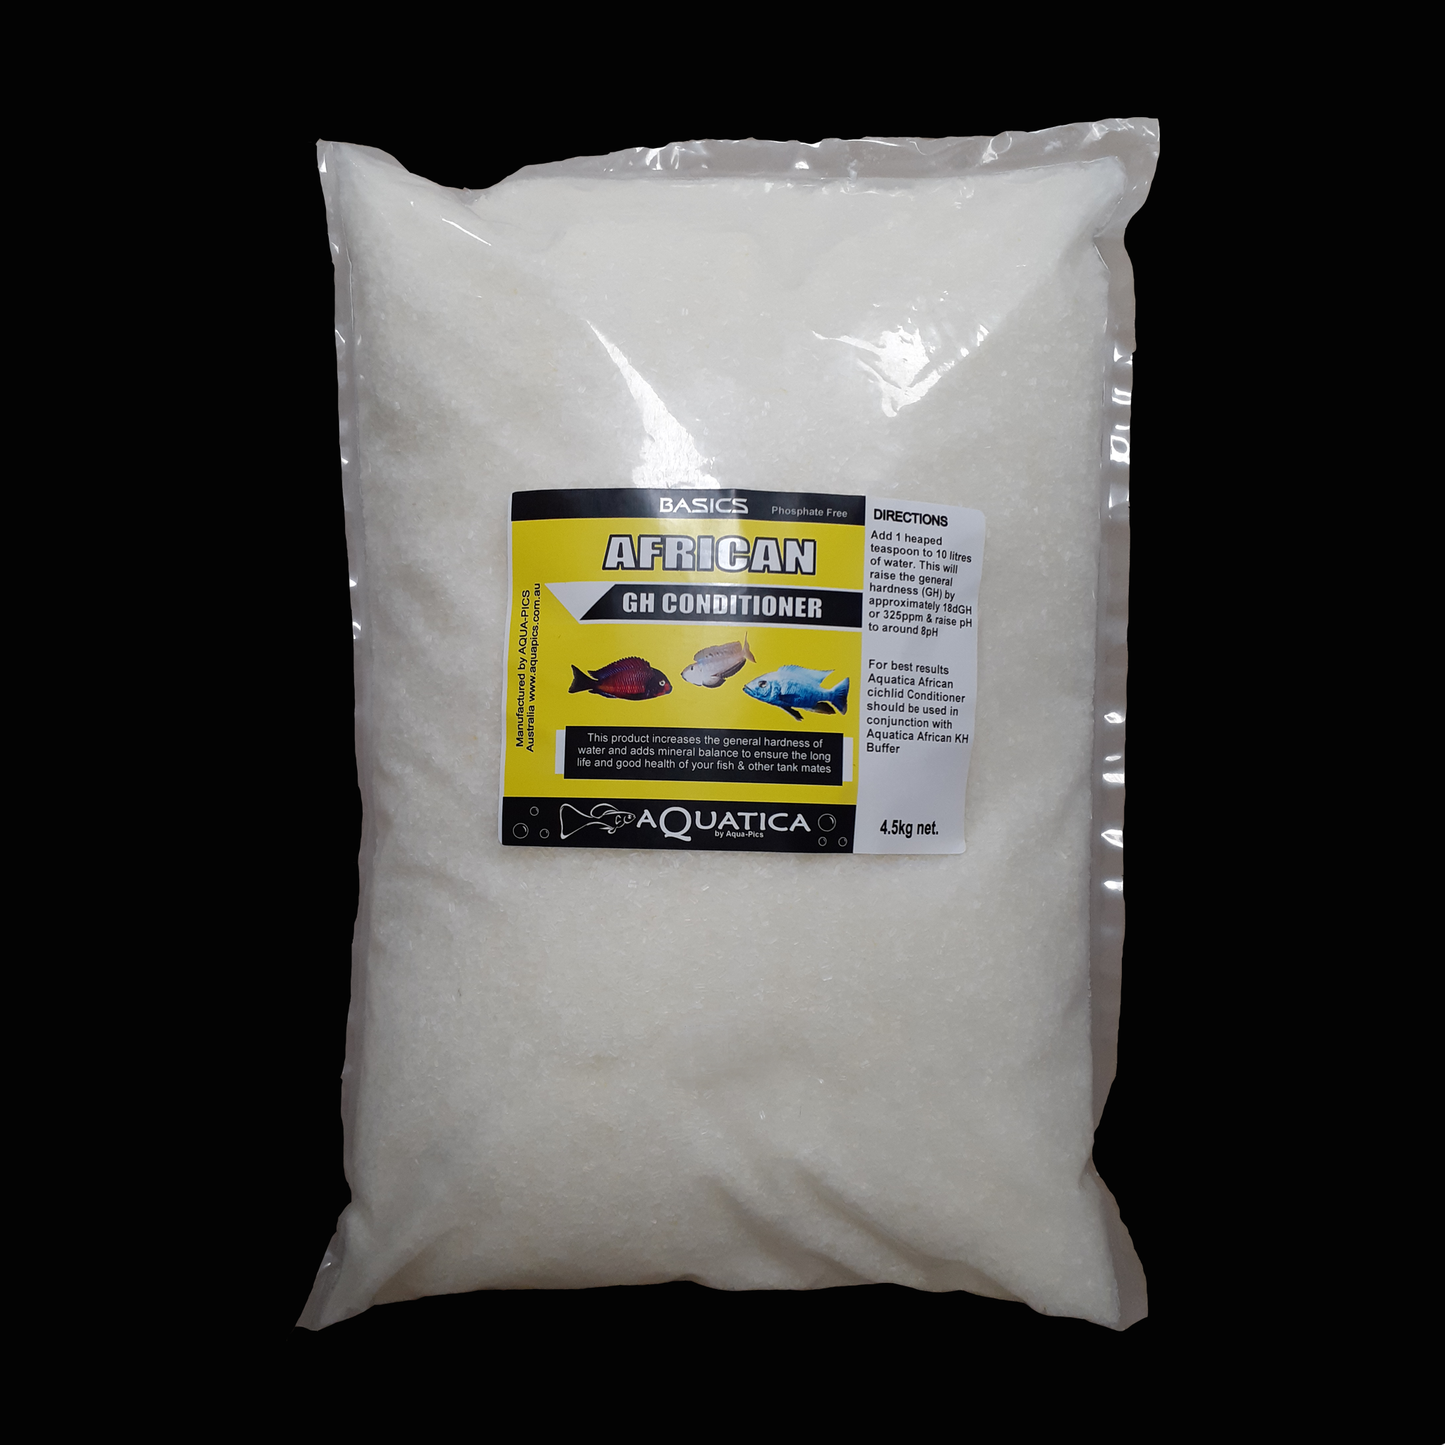 Aquatica Basics African GH Conditioner 4.5kg bag